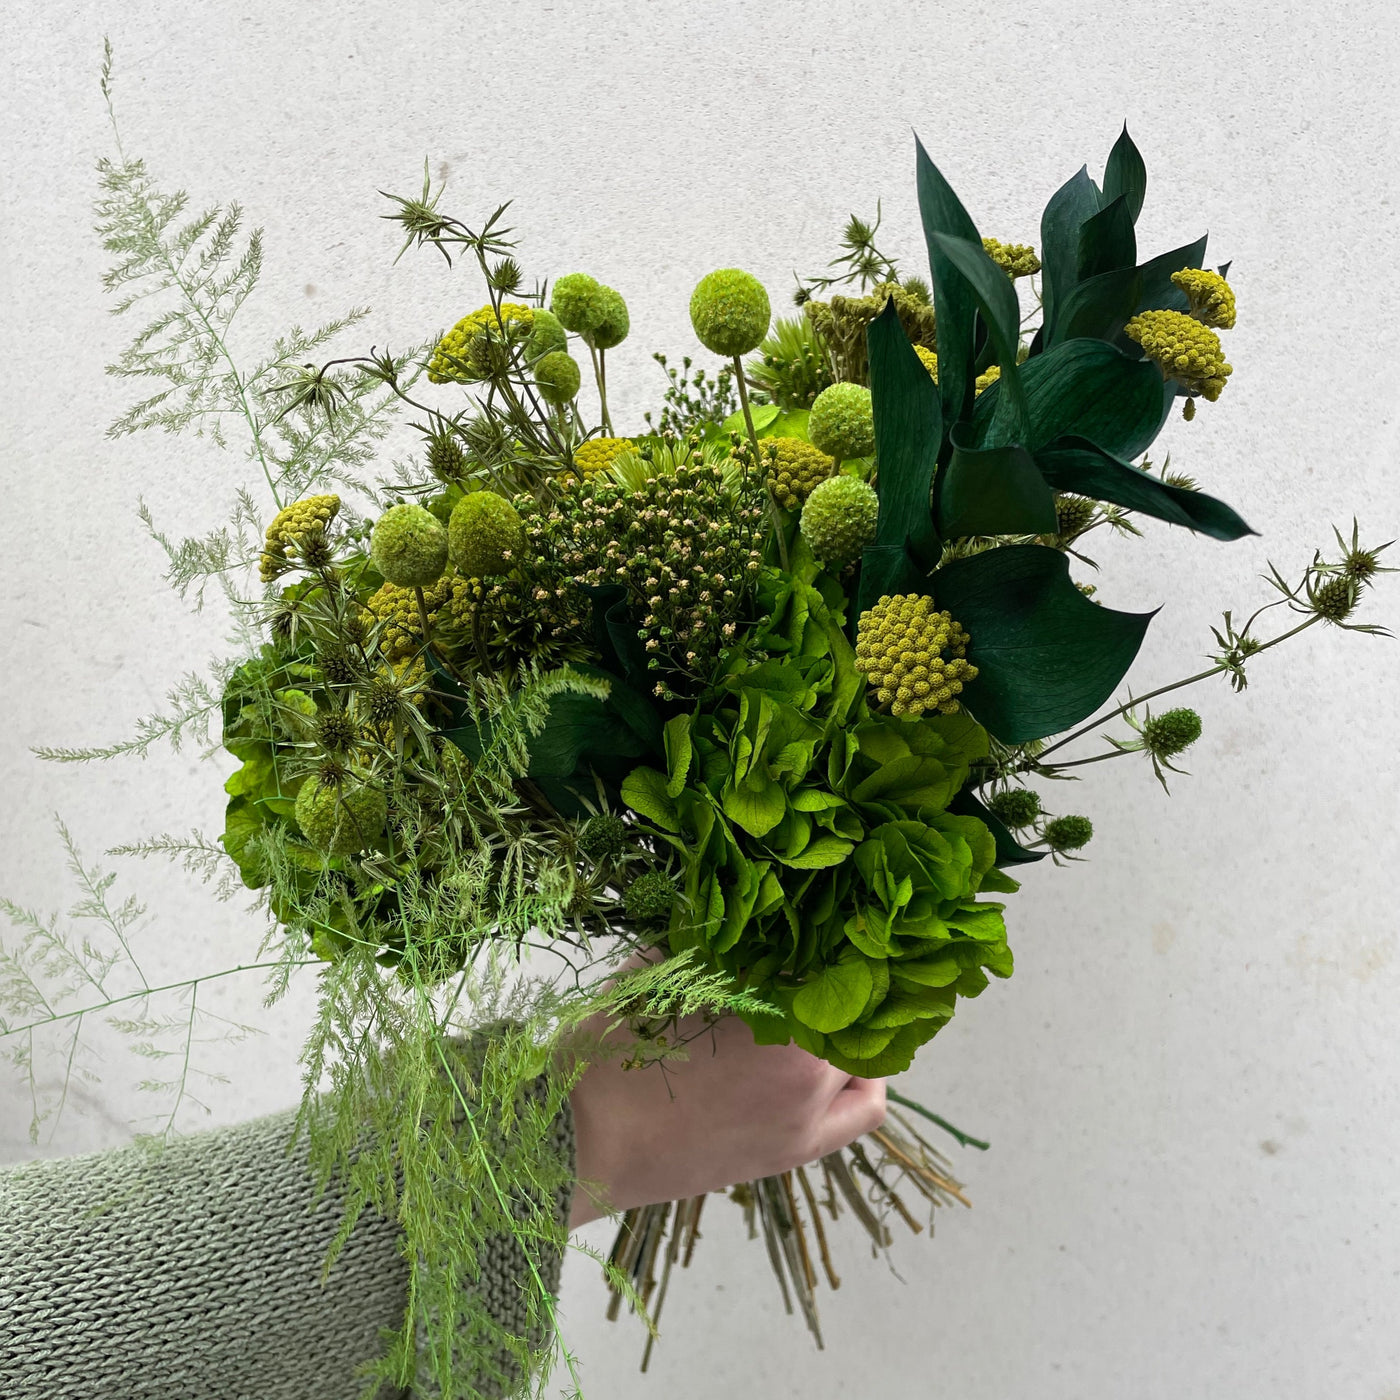 Bouquet de fleurs stabilisées éternelles vert composé d'Hortensia, Chardon Echinops, Chardon, Broom, Craspedia, Achillée, Ruscus, Asparagus. Vue du côté droit